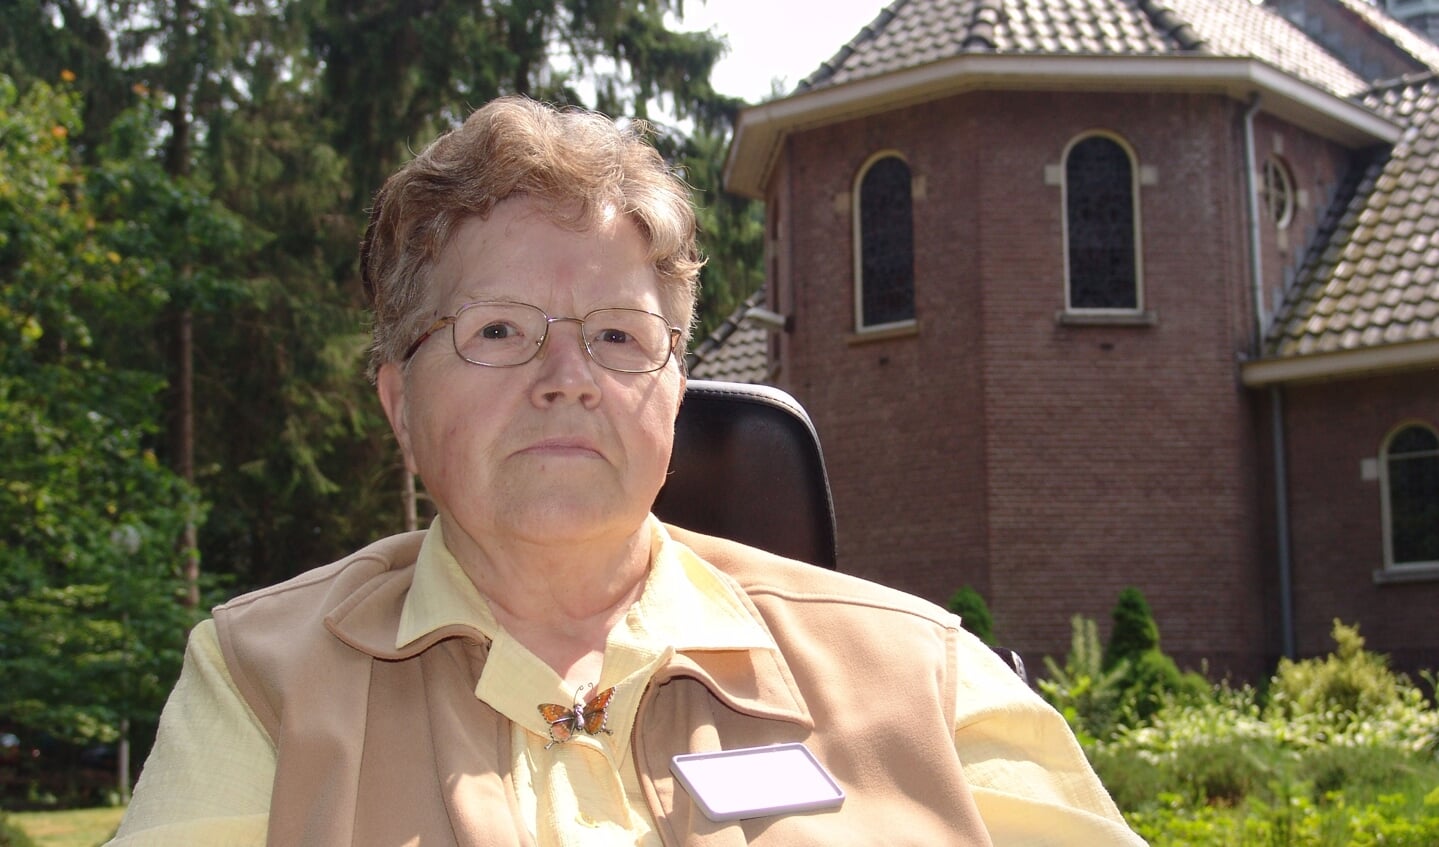 Zuster Dorothea Schulte buiten voor de kapel. Zij kwam in 1961 vanuit Purmerend als patiënt naar St. Elisabeth. Na haar herstel is zij tot 1973 als keukenzuster werkzaam geweest. Hierna heeft zij nog tot 1998 bij de receptie gewerkt. [foto Koos Kolenbrander 2007]